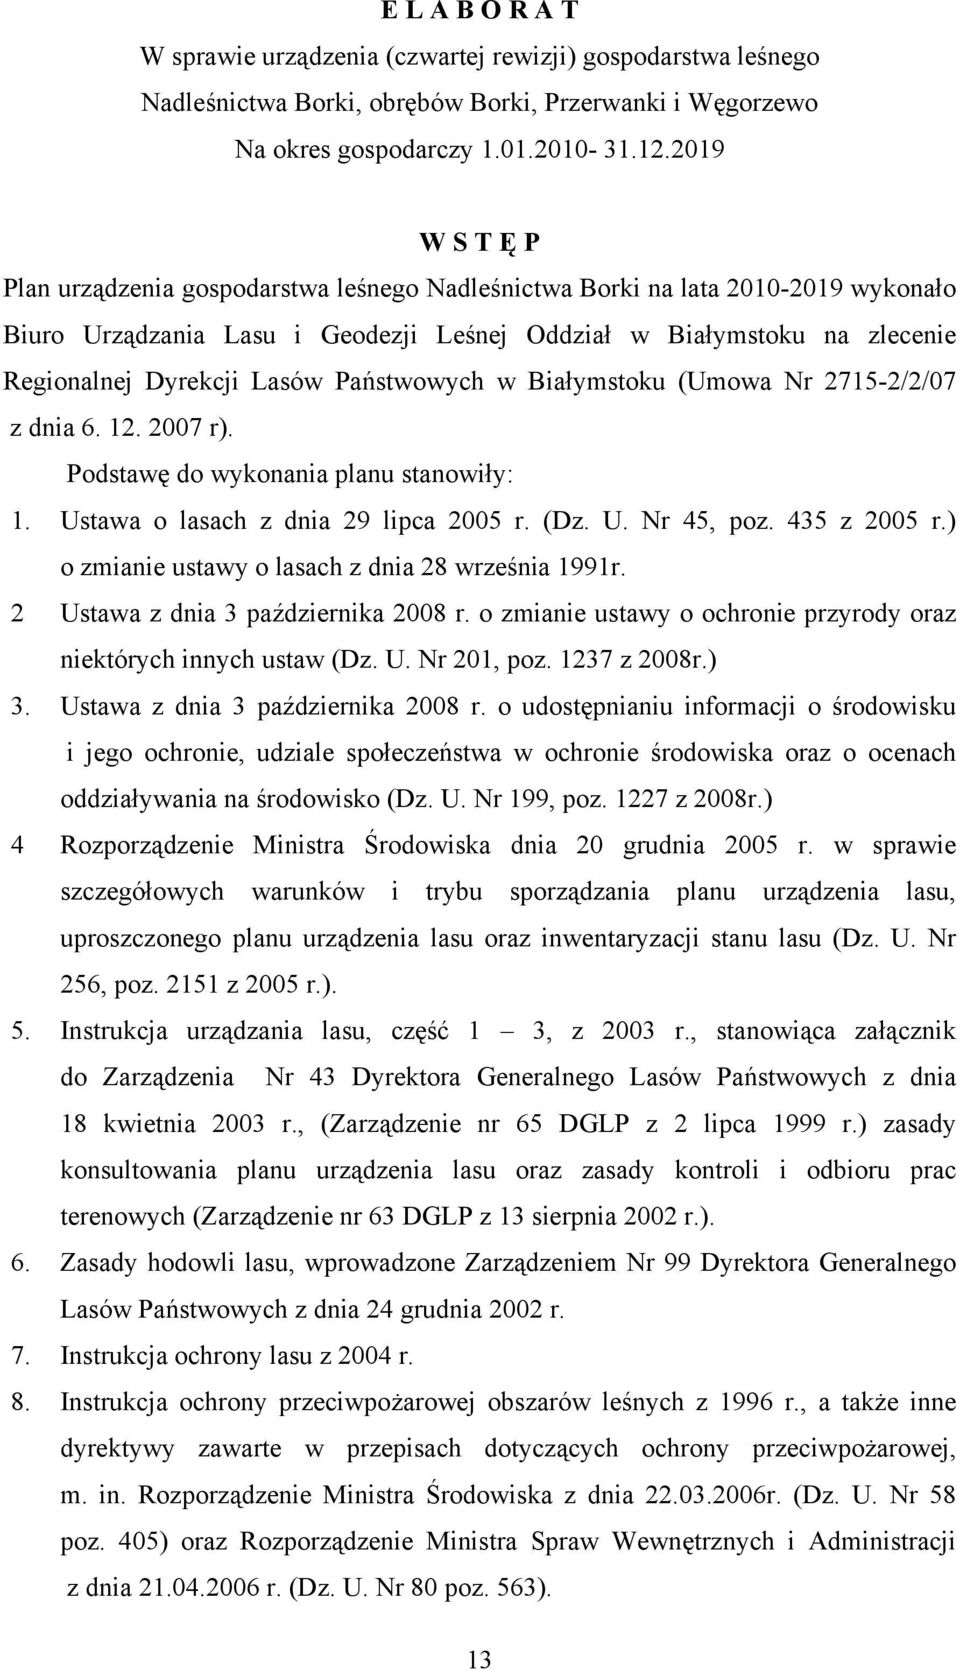 Państwowych w Białymstoku (Umowa Nr 2715-2/2/07 z dnia 6. 12. 2007 r). Podstawę do wykonania planu stanowiły: 1. Ustawa o lasach z dnia 29 lipca 2005 r. (Dz. U. Nr 45, poz. 435 z 2005 r.